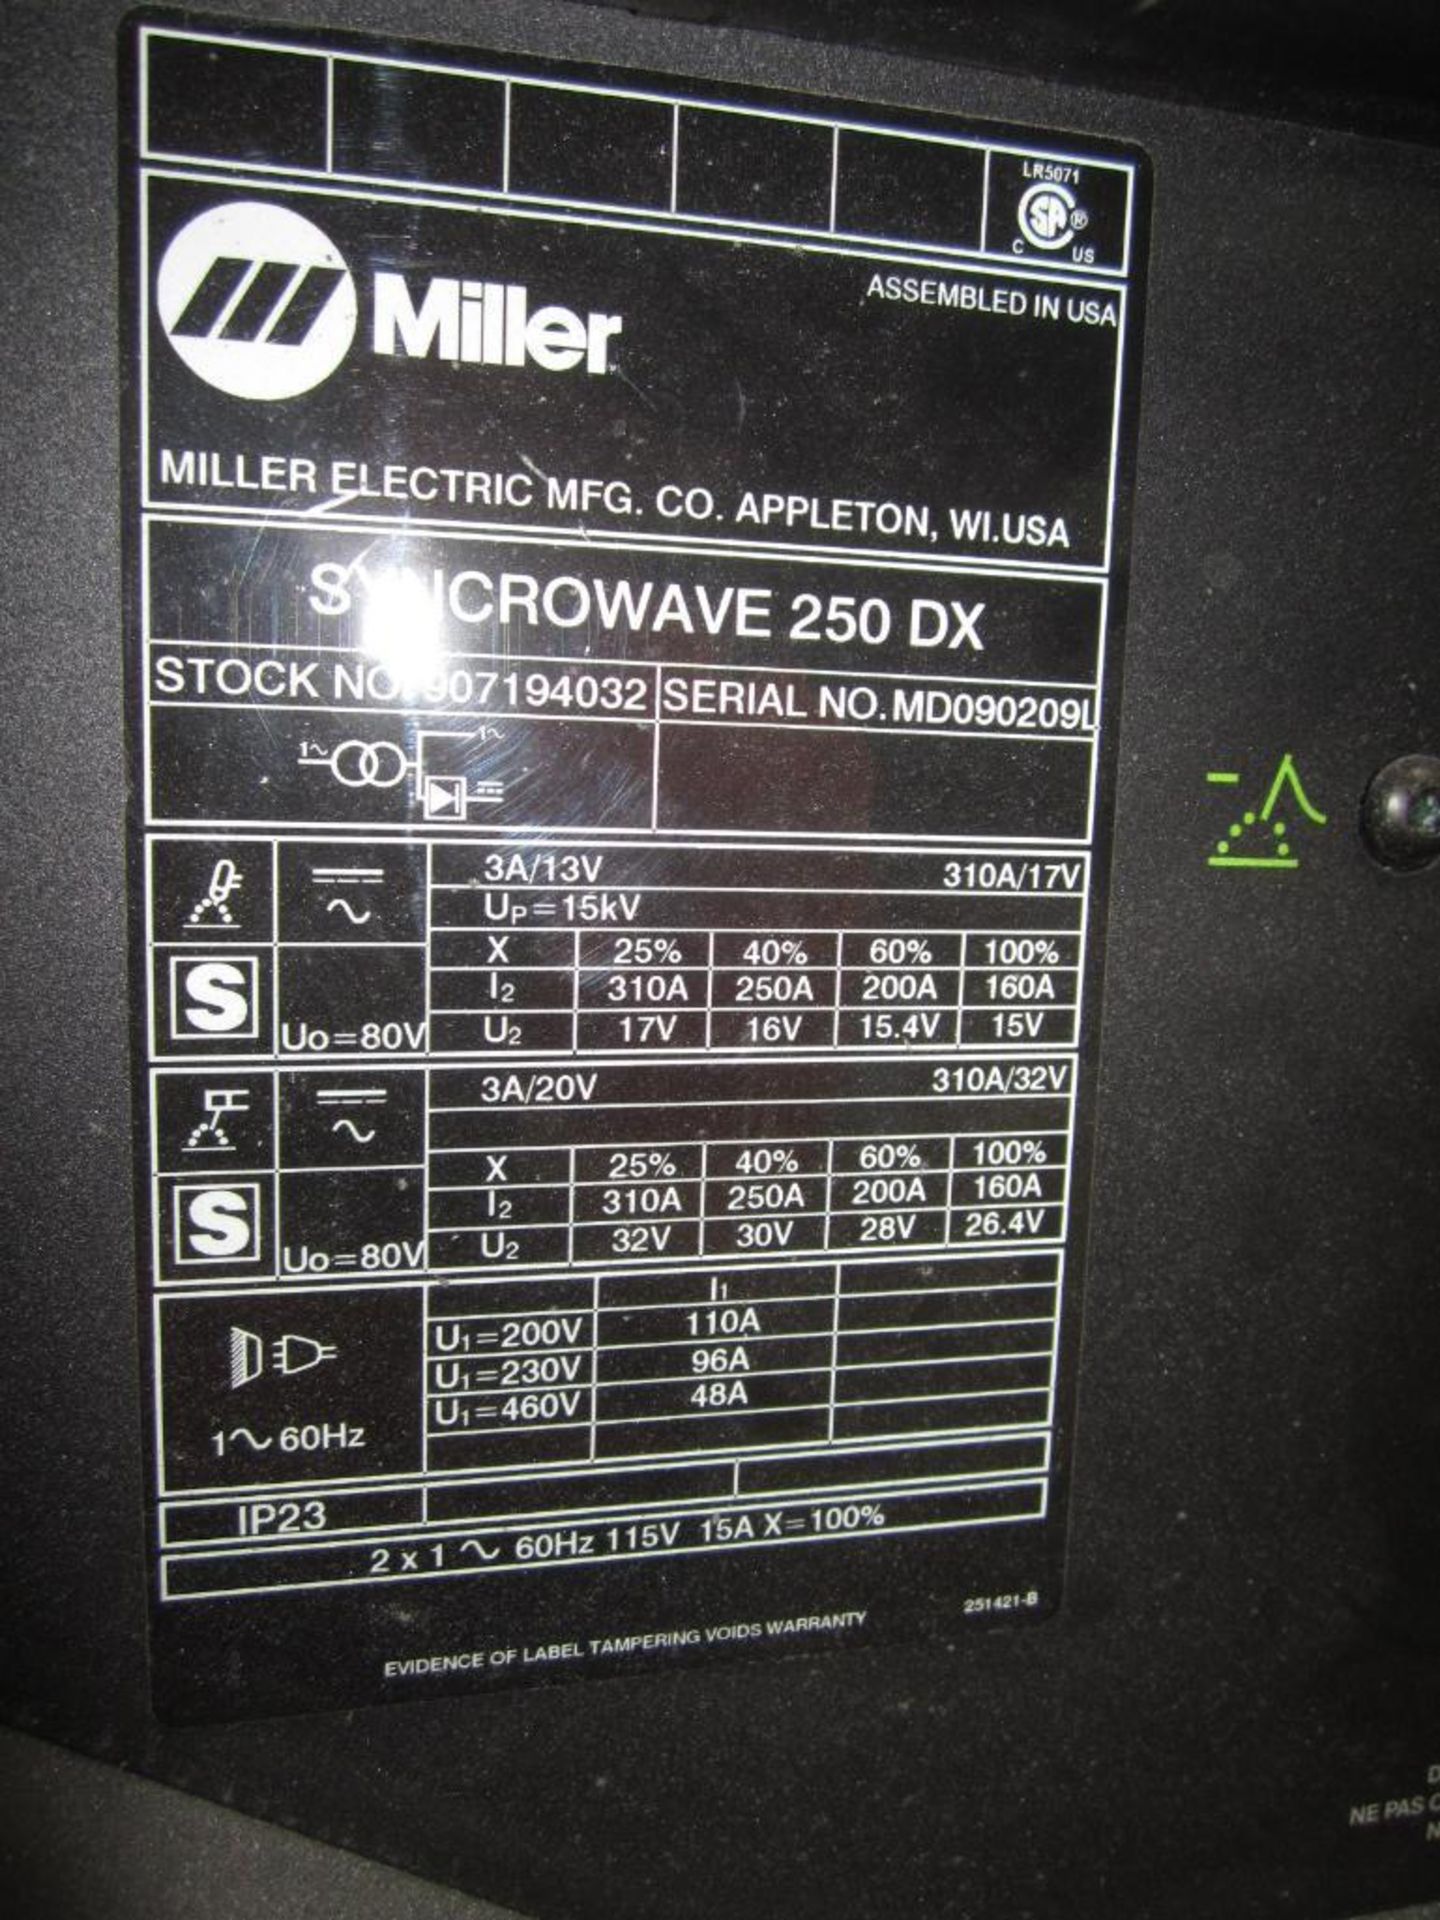 Miller synchrowave arc welder 250DX - Image 9 of 9